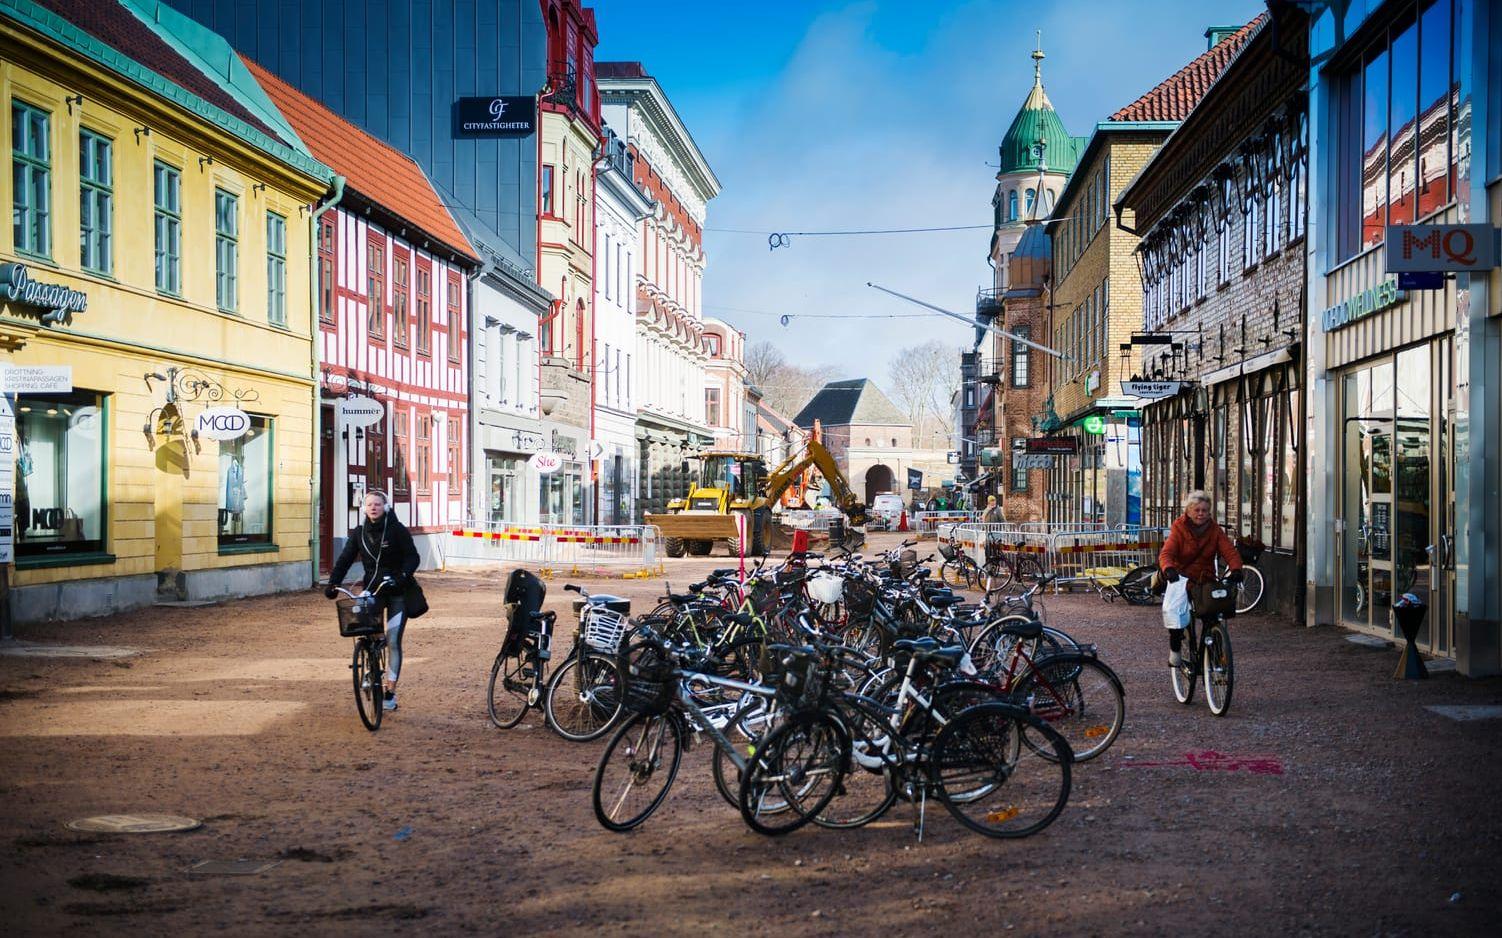 Ombyggnaden av Storgatan är i full gång och följer tidsplanen. Men cyklar skapar problem, menar kommunen som nu kommer att införa förbud mot att cykla längs gatan under byggtiden. Bild: Roger Larsson